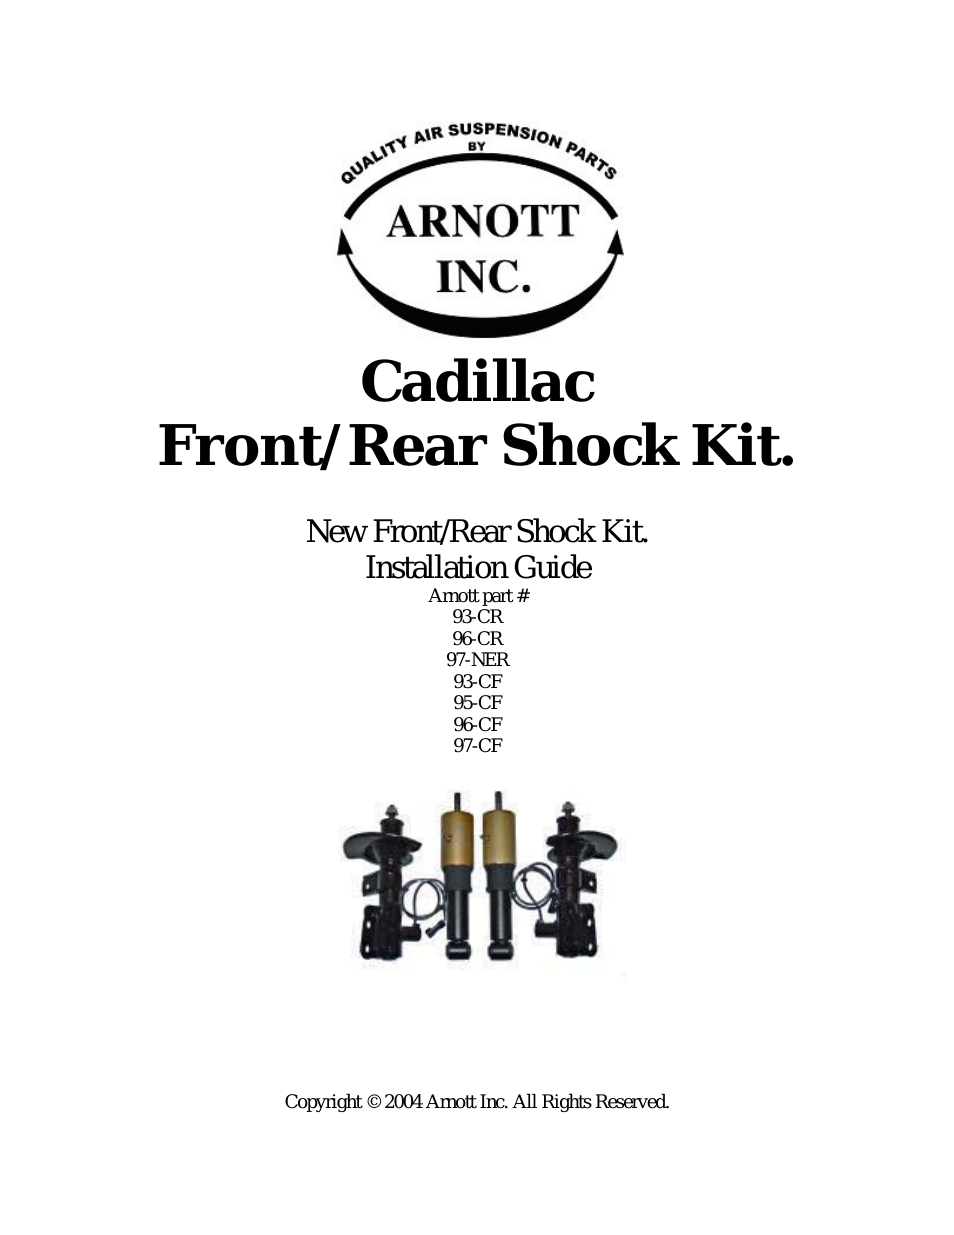 93,95,96,97-CF Cadillac Front/Rear Shock Kit